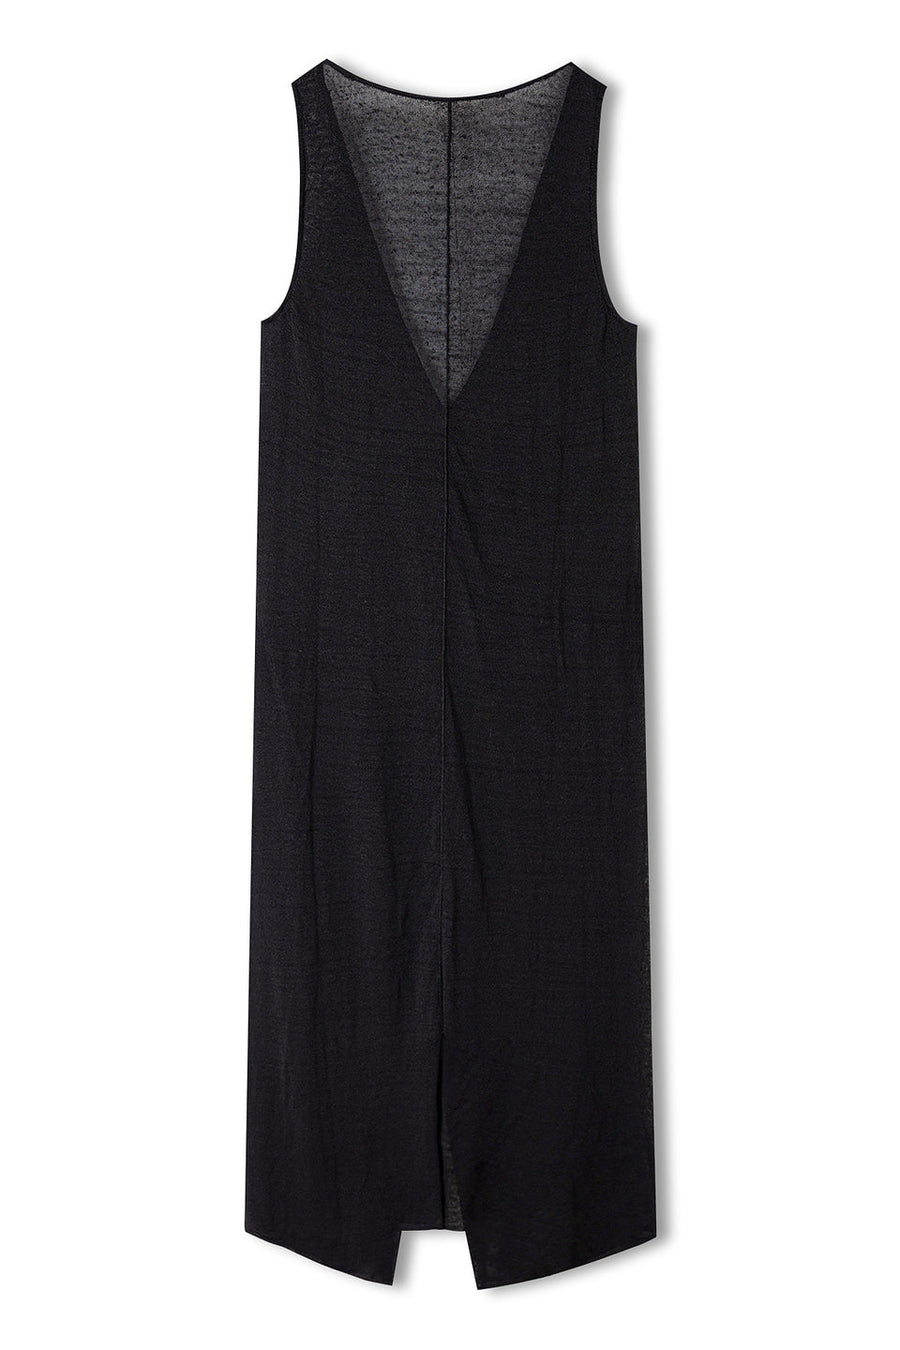 Zulu & Zephyr - Black Knitted Organic Linen Blend Dress